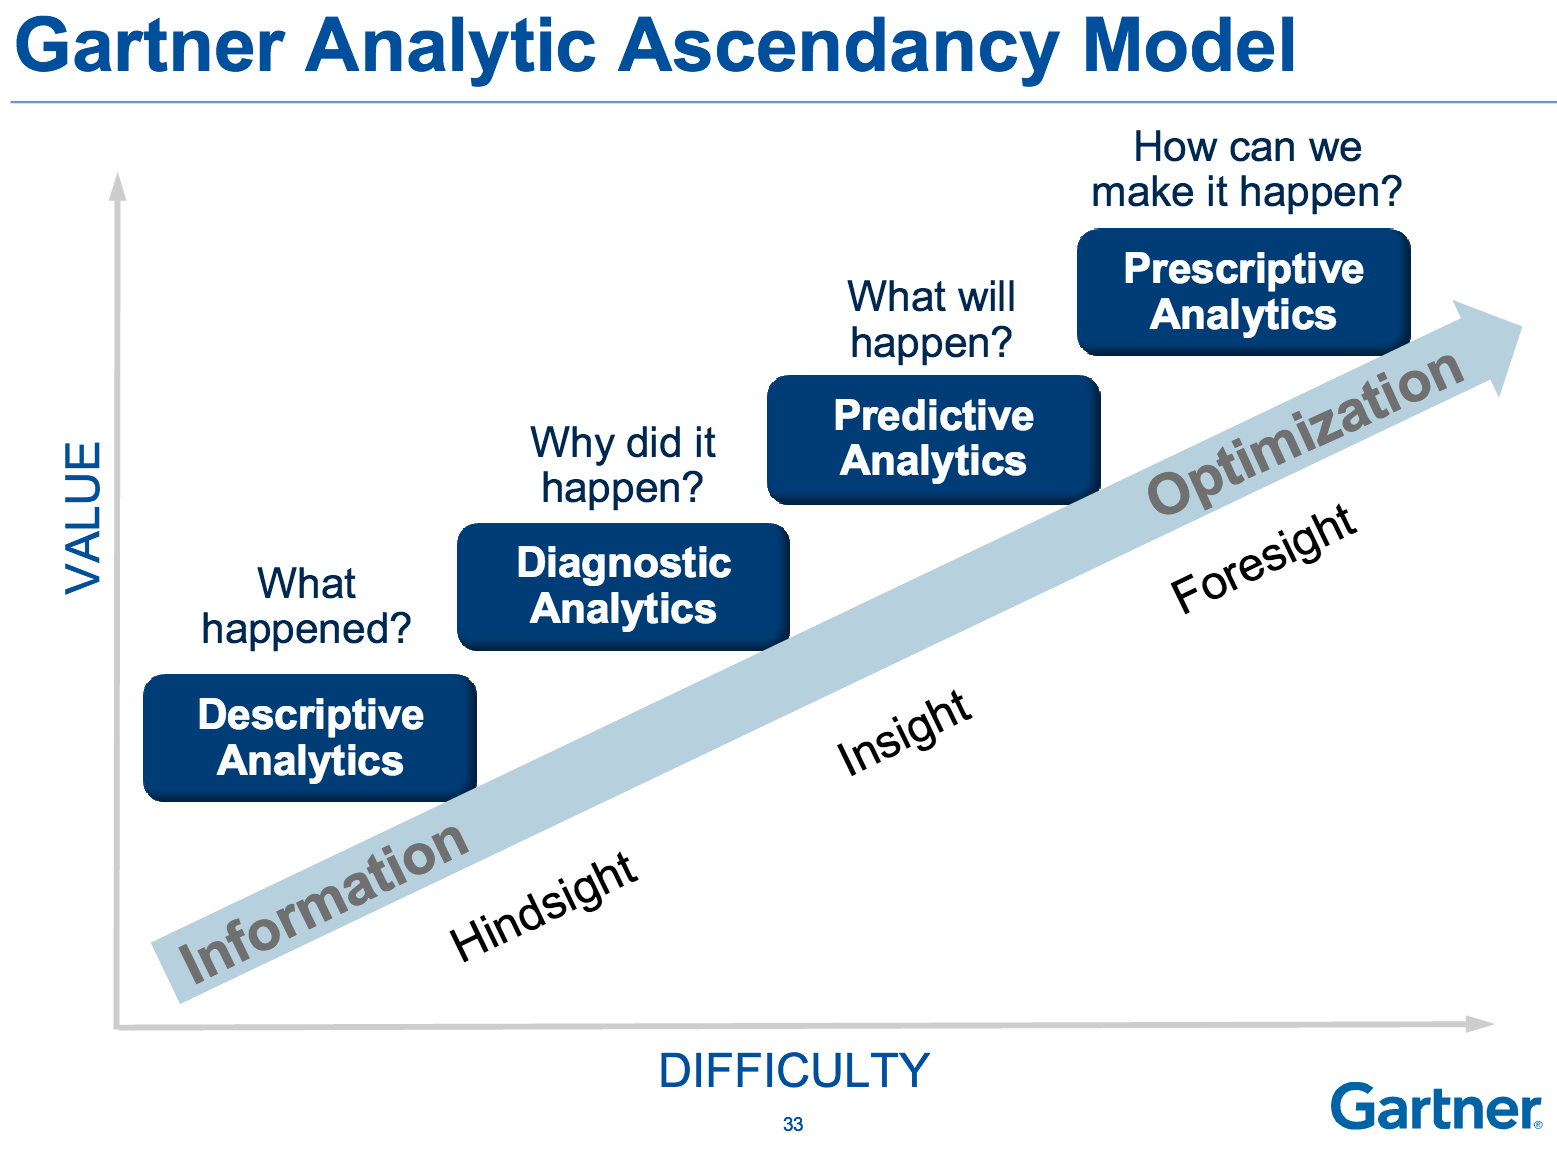 Gartner’s Analytics Ascendancy Model